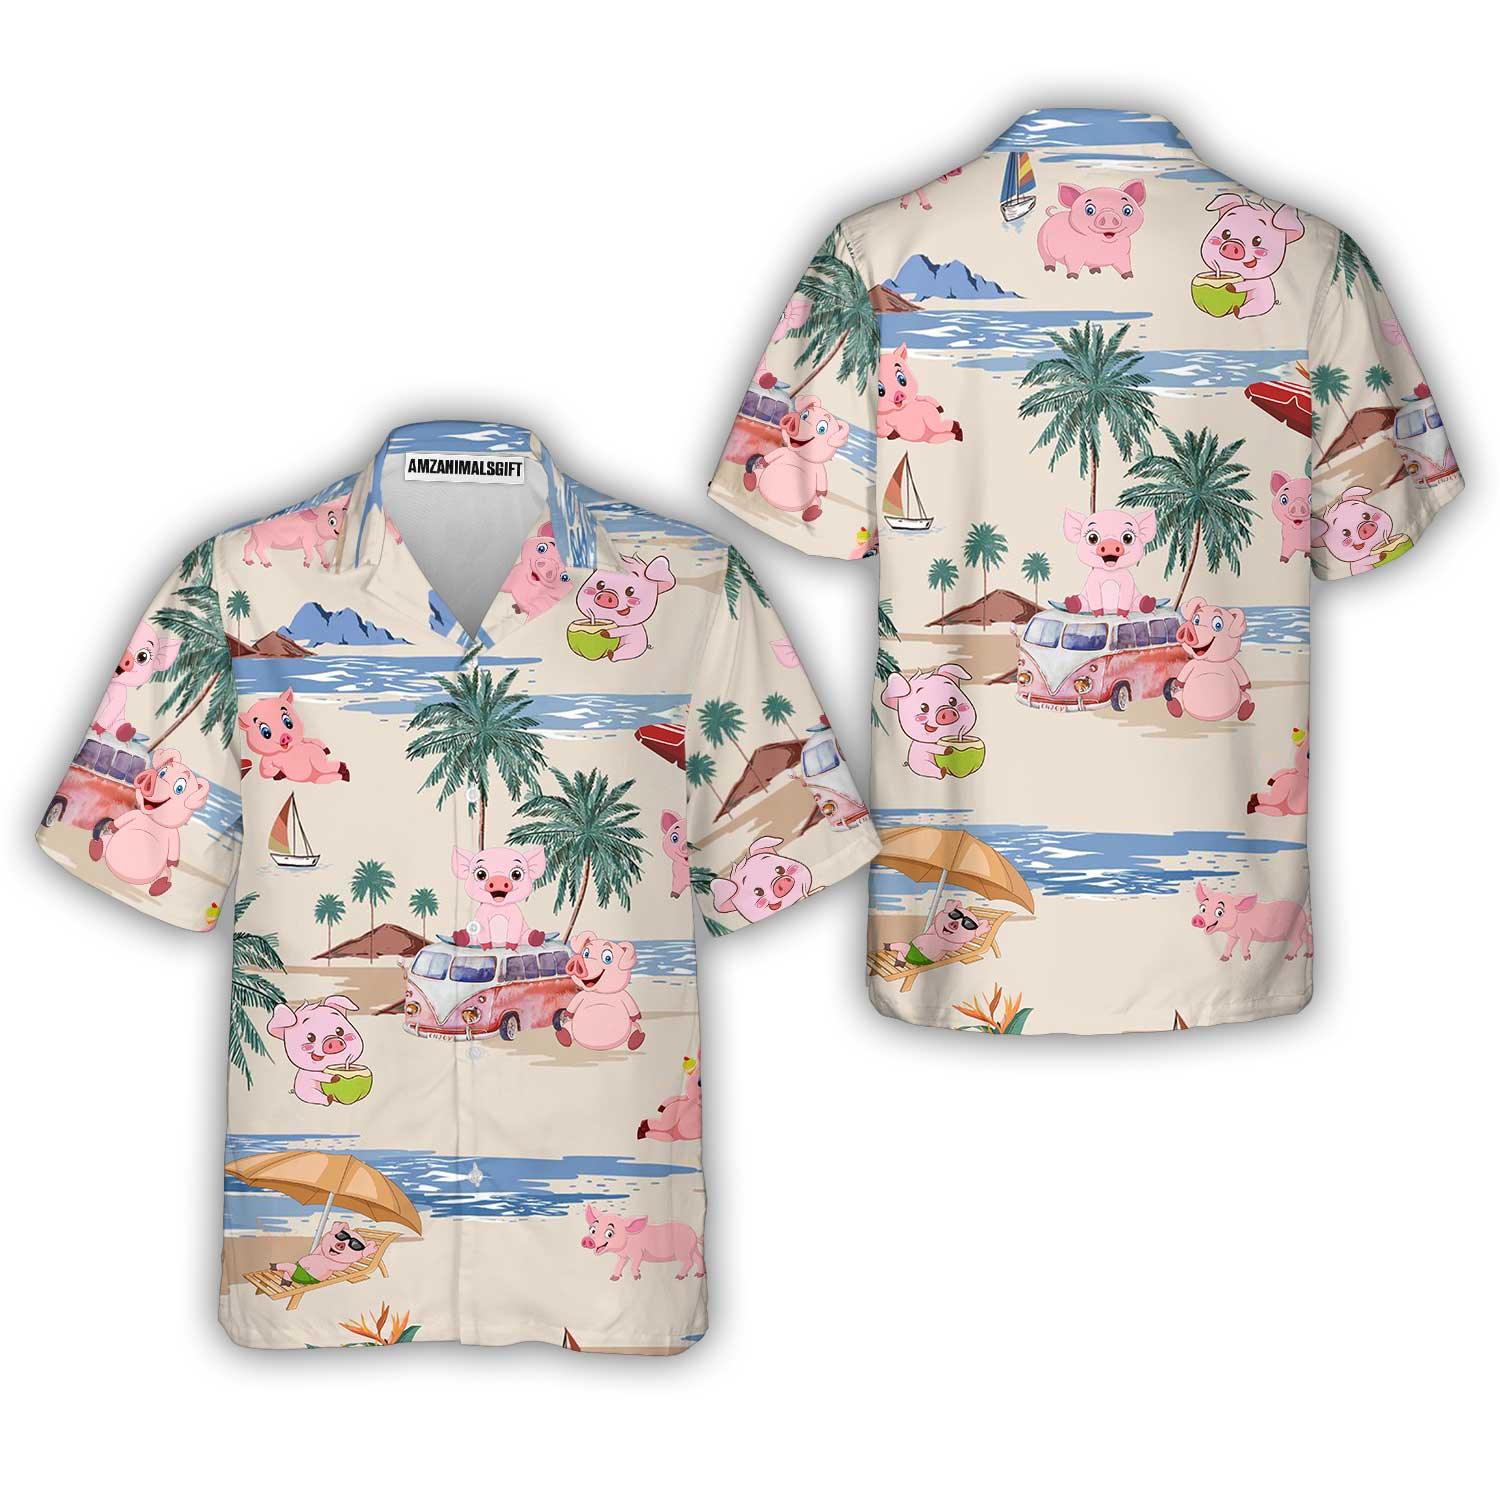 Pig Aloha Hawaiian Shirt, Pig Beach Pattern Hawaiian Shirt, Pig Aloha Hawaii Shirt For Summer - Perfect Gift For Men, Women, Pig Lover, Friend, Family - Amzanimalsgift